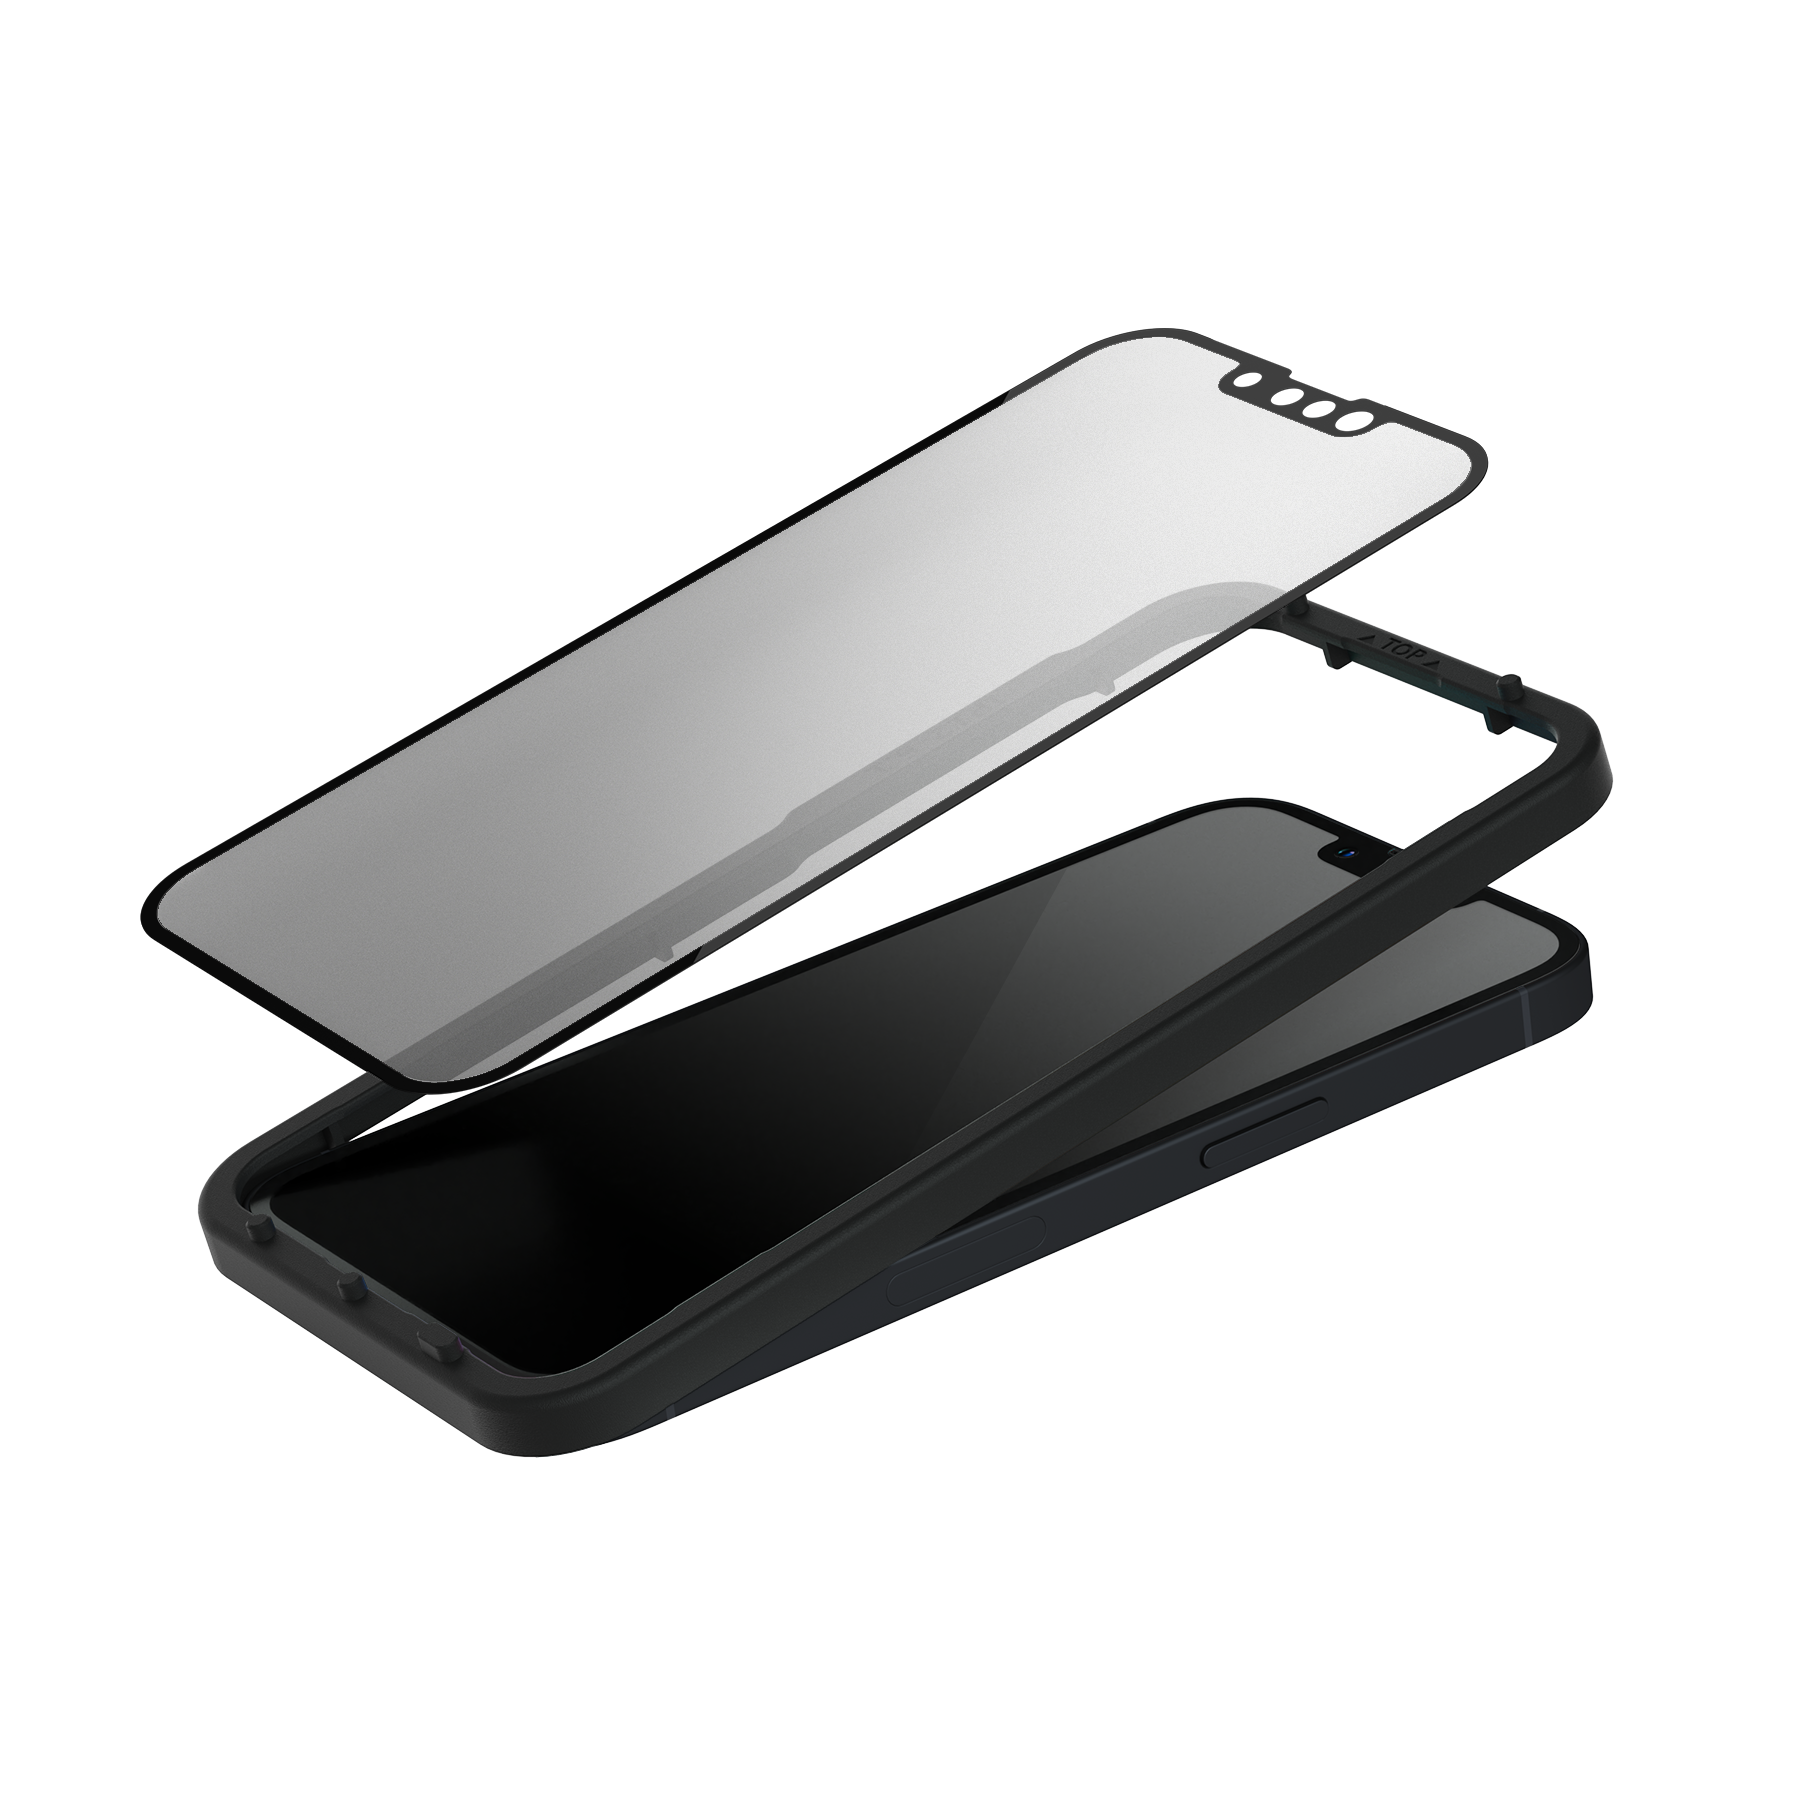 霧面版 犀牛盾3D壯撞貼 附貼膜輔助工具 手機保護貼 Iphone螢幕保護貼